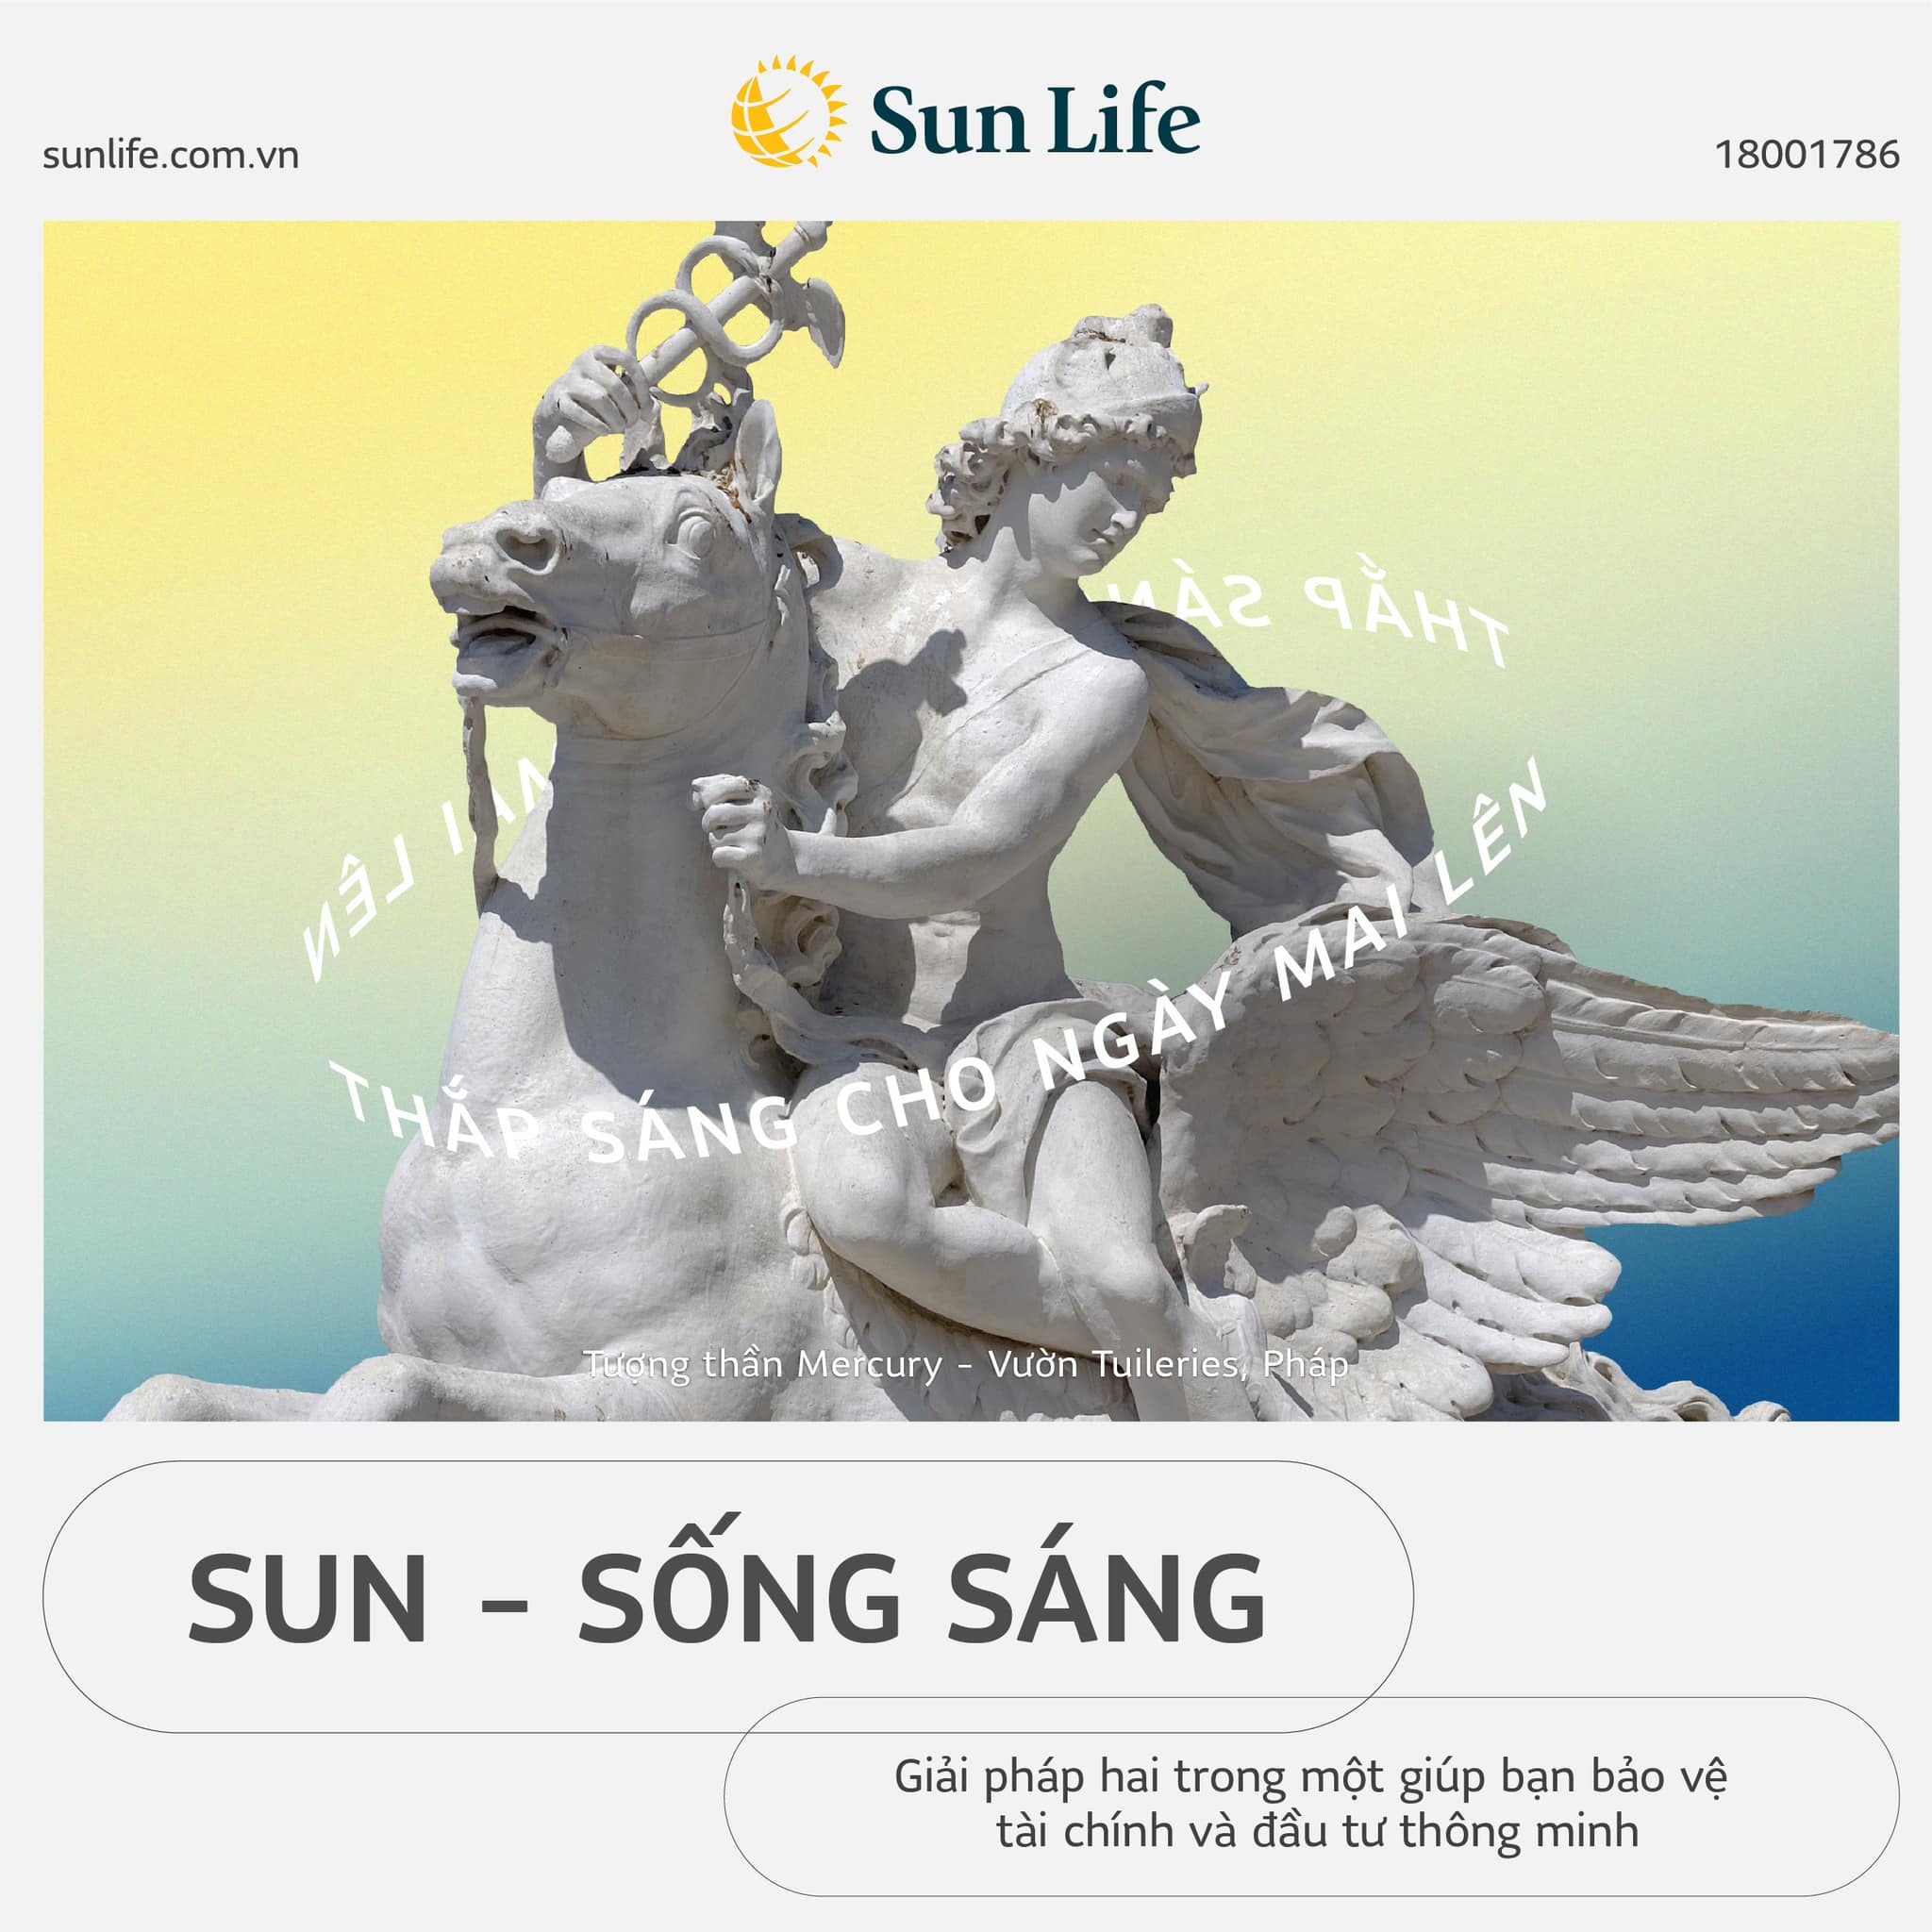 sun life ra mat san pham sun song sang